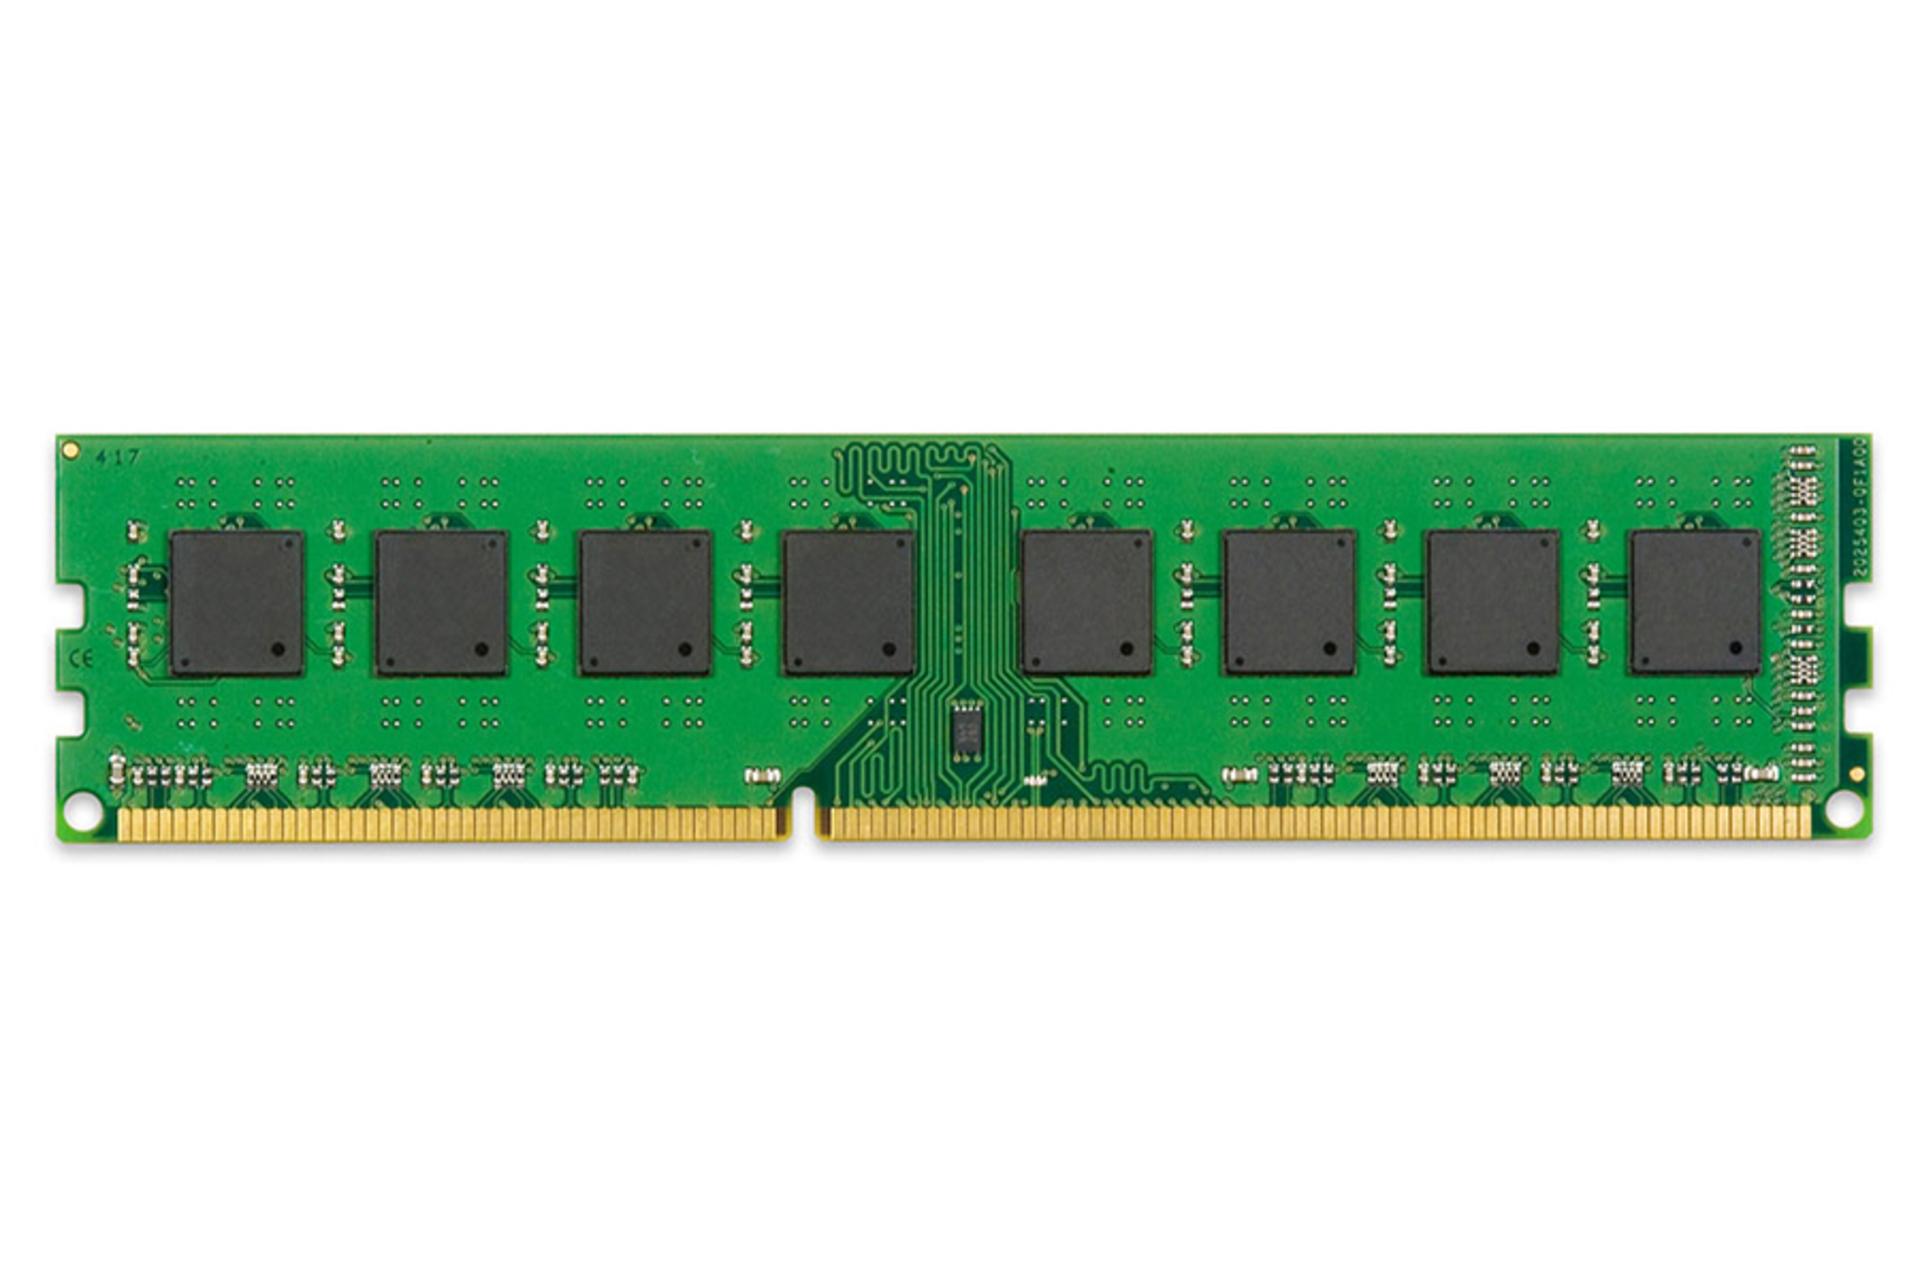 مرجع متخصصين ايران كينگستون KVR1333D3N9/8G ValueRAM ظرفيت 8 گيگابايت از نوع DDR3-1333